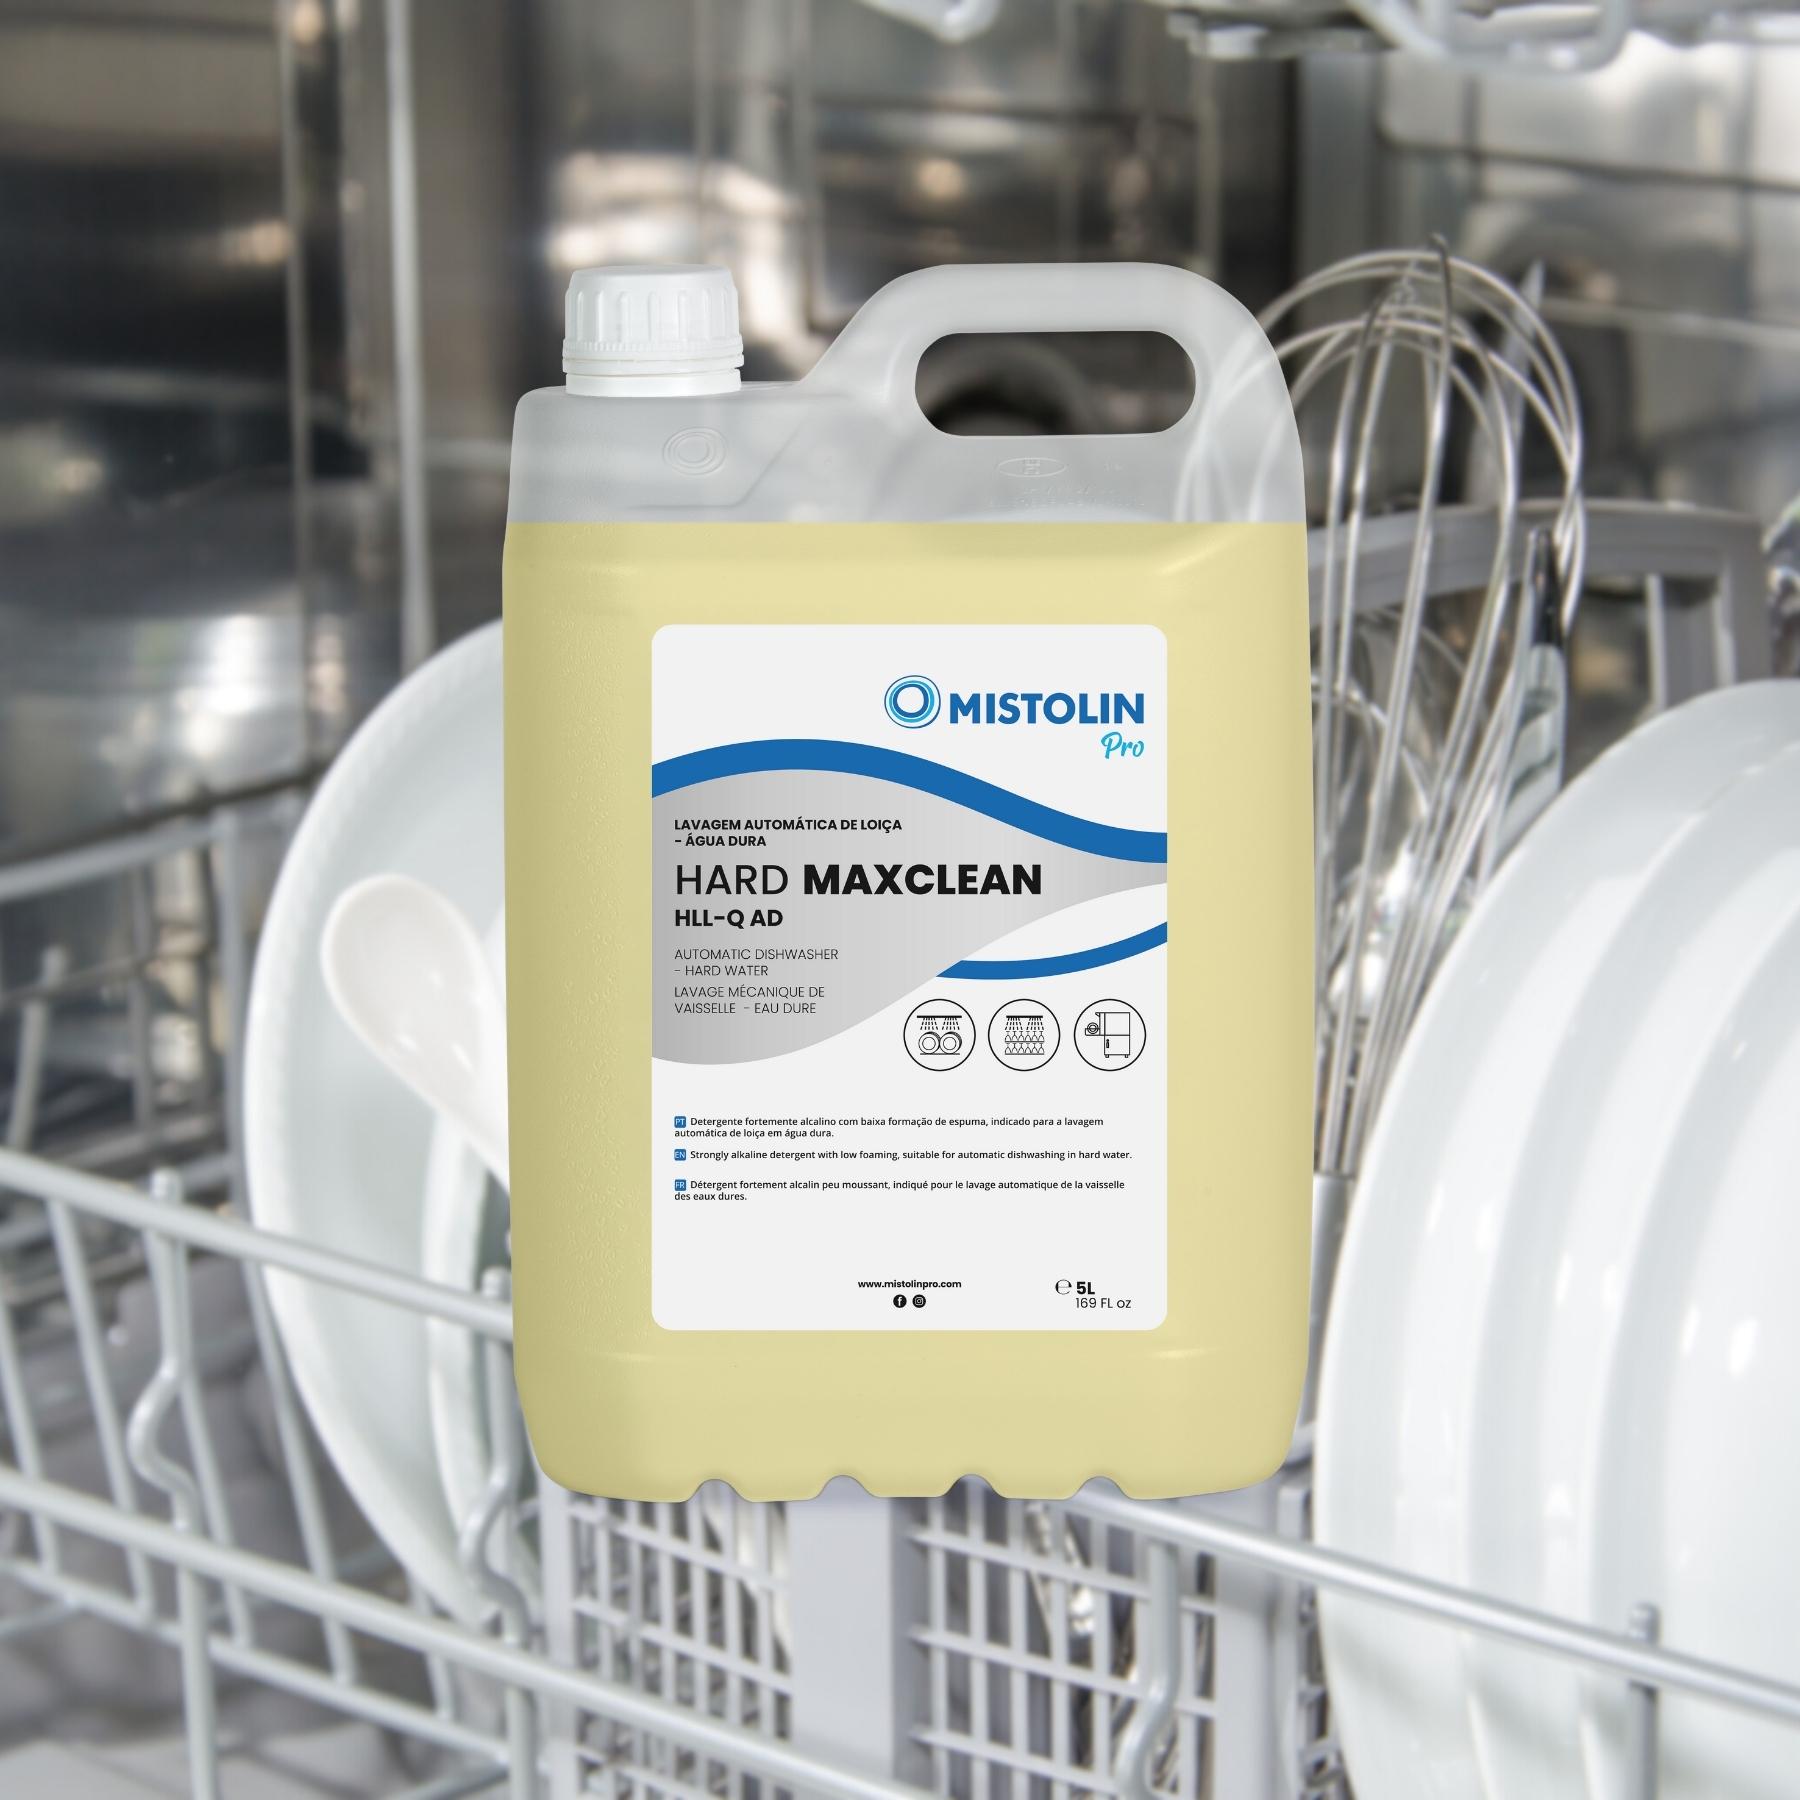 HARD MAXCLEAN HLL-Q AD DET.LAV.MECANICA LOIÇA 5LT, é um detergente fortemente alcalino com baixa formação de espuma, indicado para a lavagem automática de louça em água dura.